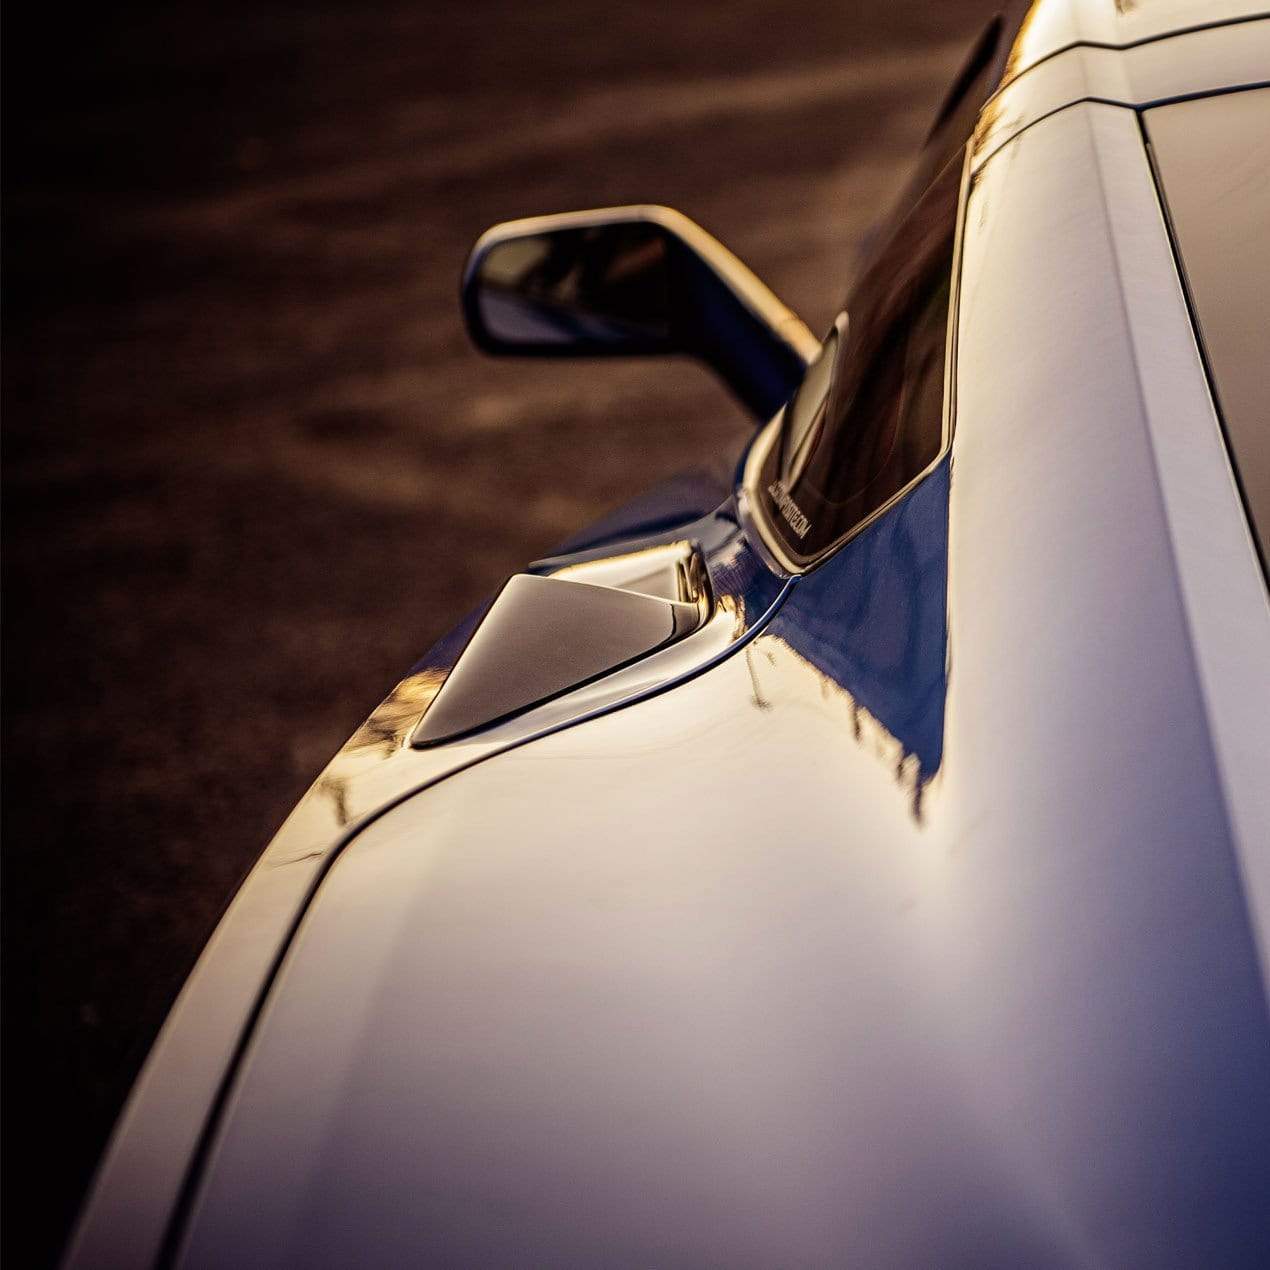 ACS Five1 Rear Quarter Intake Port for C7 Corvette | 45-4-011 CFZ | Boosts airflow & enhances aesthetics.